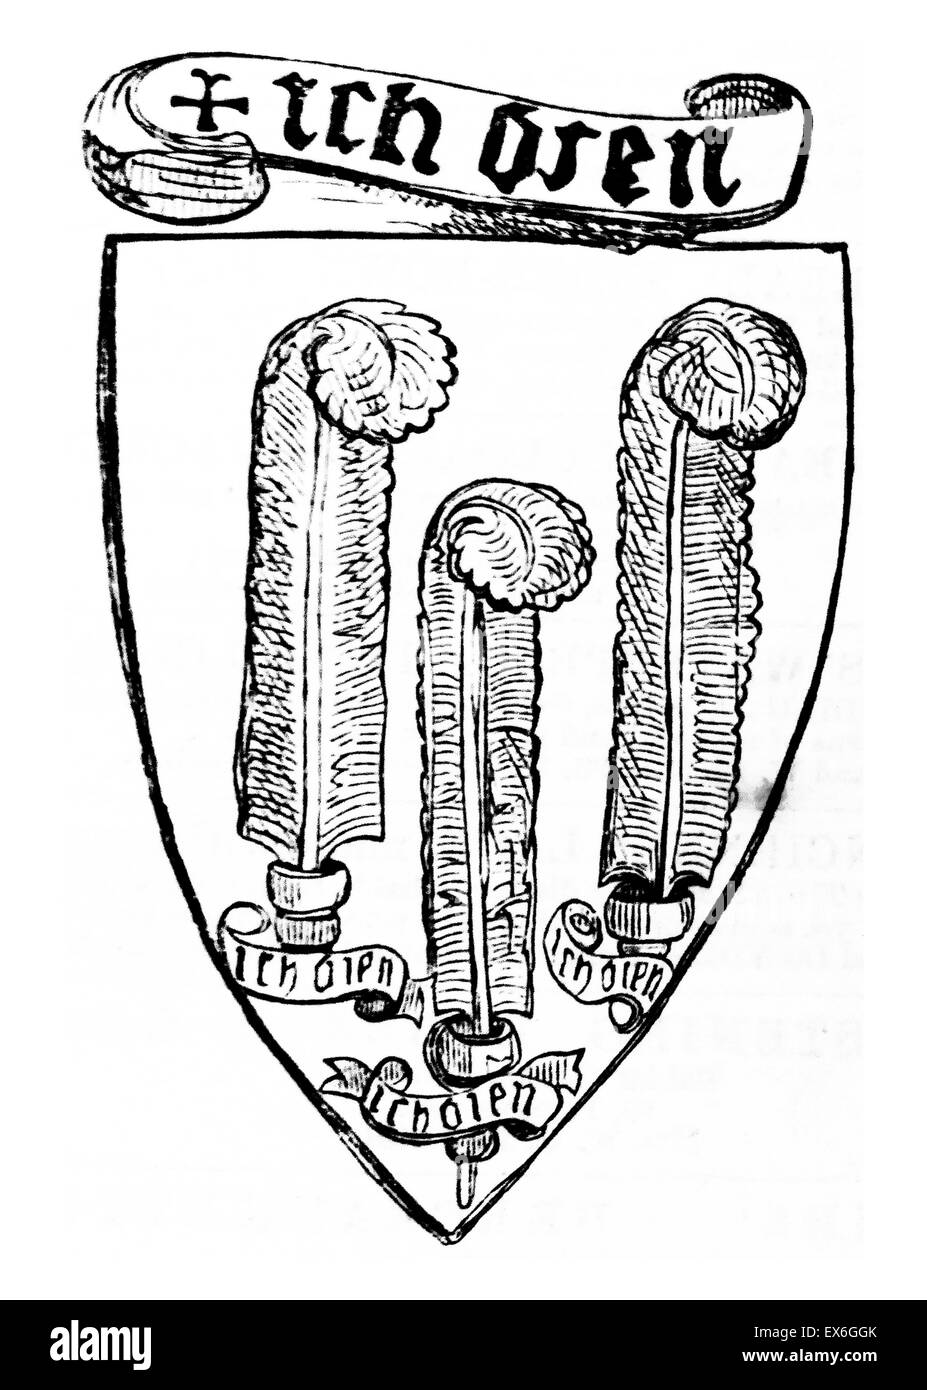 Insignes appartenant à Édouard de Woodstock (15 juin 1330 - 8 juin 1376), appelé le Prince Noir, fils aîné du roi Édouard III d'Angleterre Banque D'Images